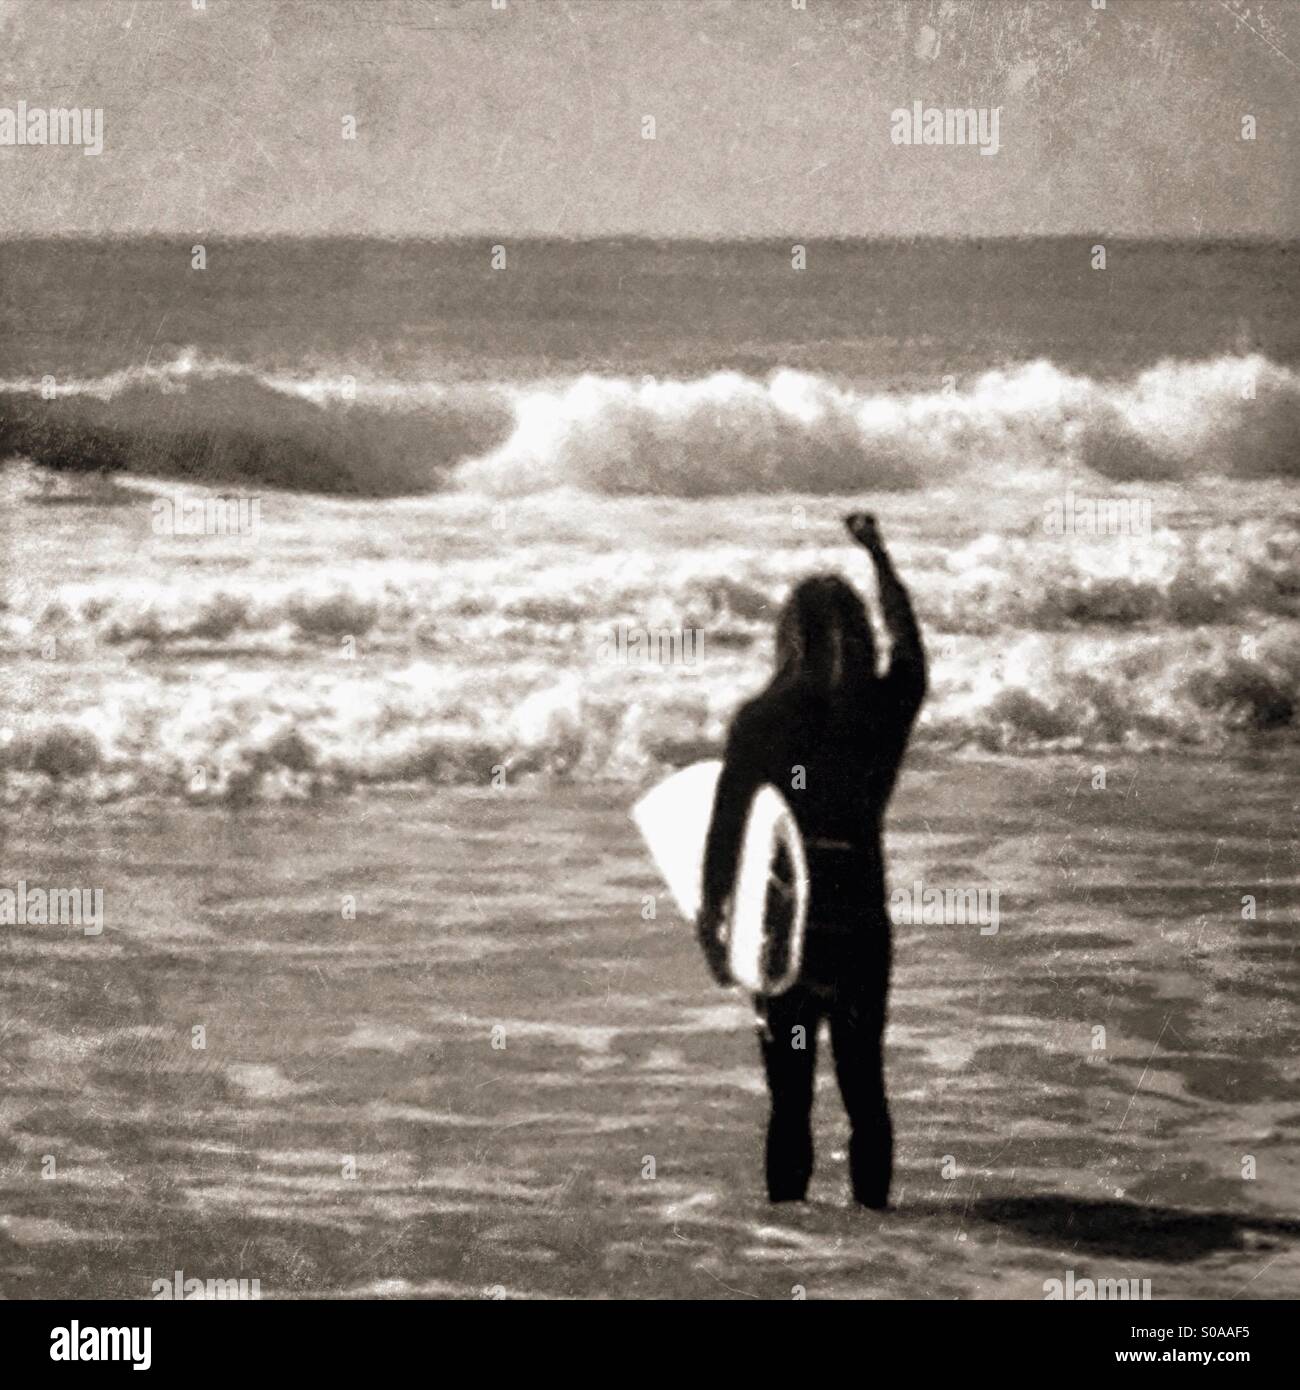 Aufgeregt Surfer mit Blick auf die Wellen. Stockfoto